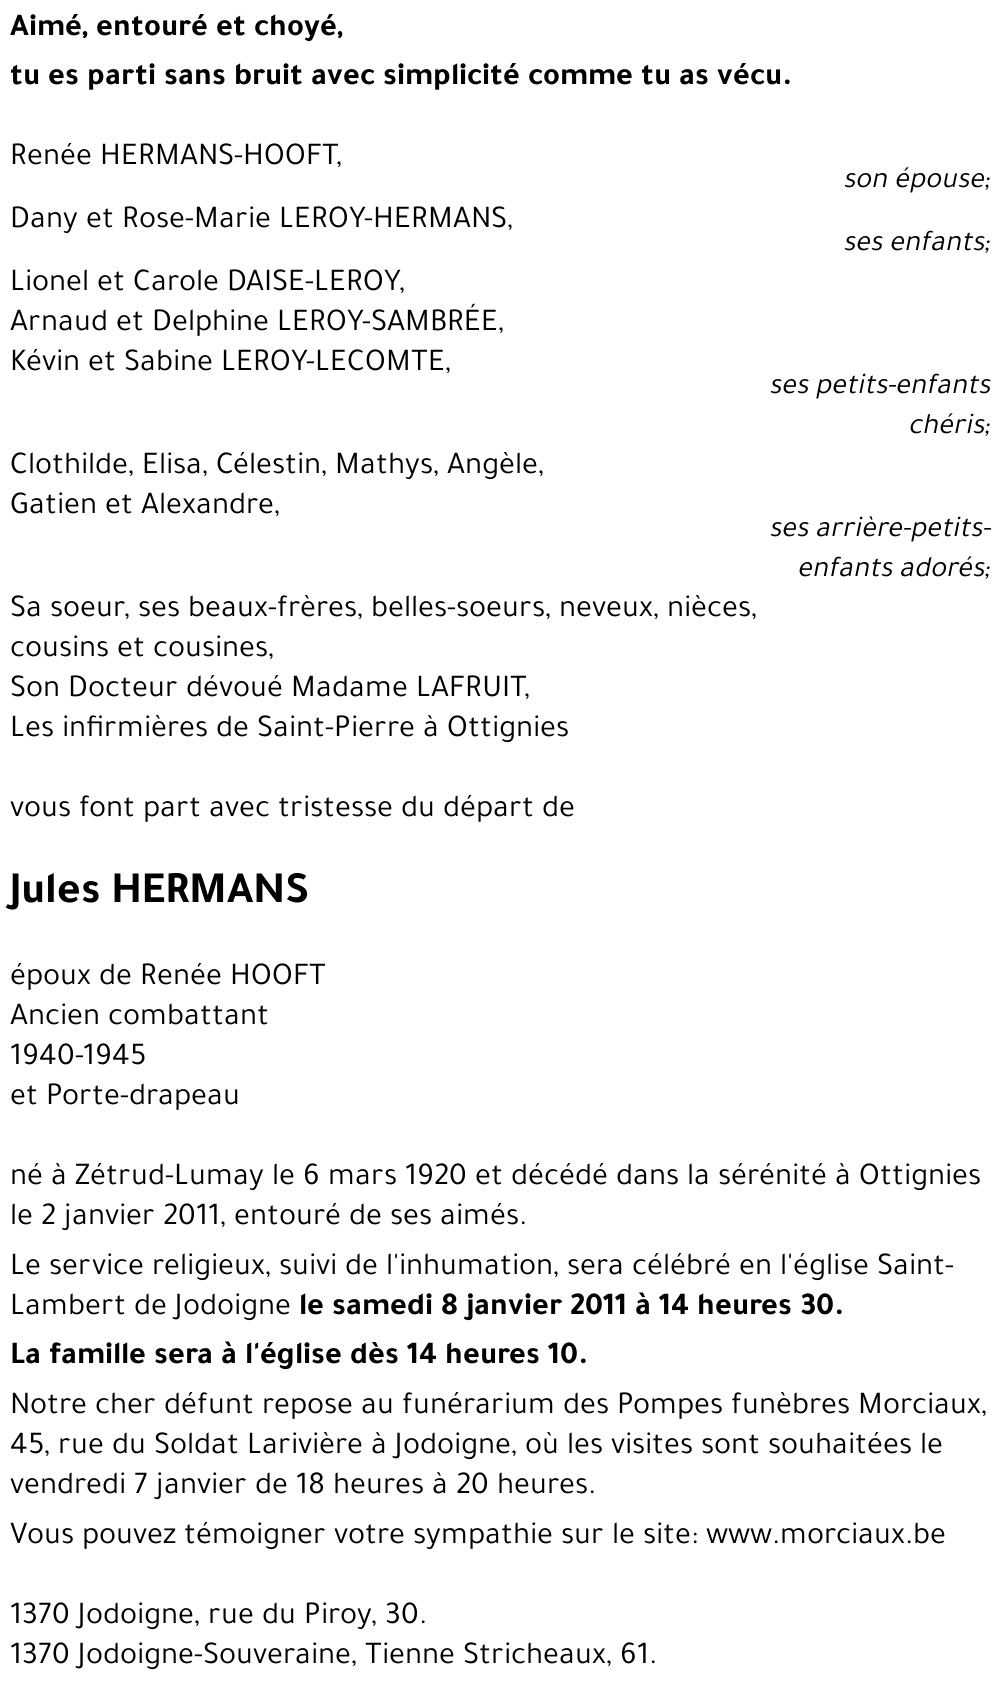 Jules HERMANS († 02/01/2011) | Inmemoriam